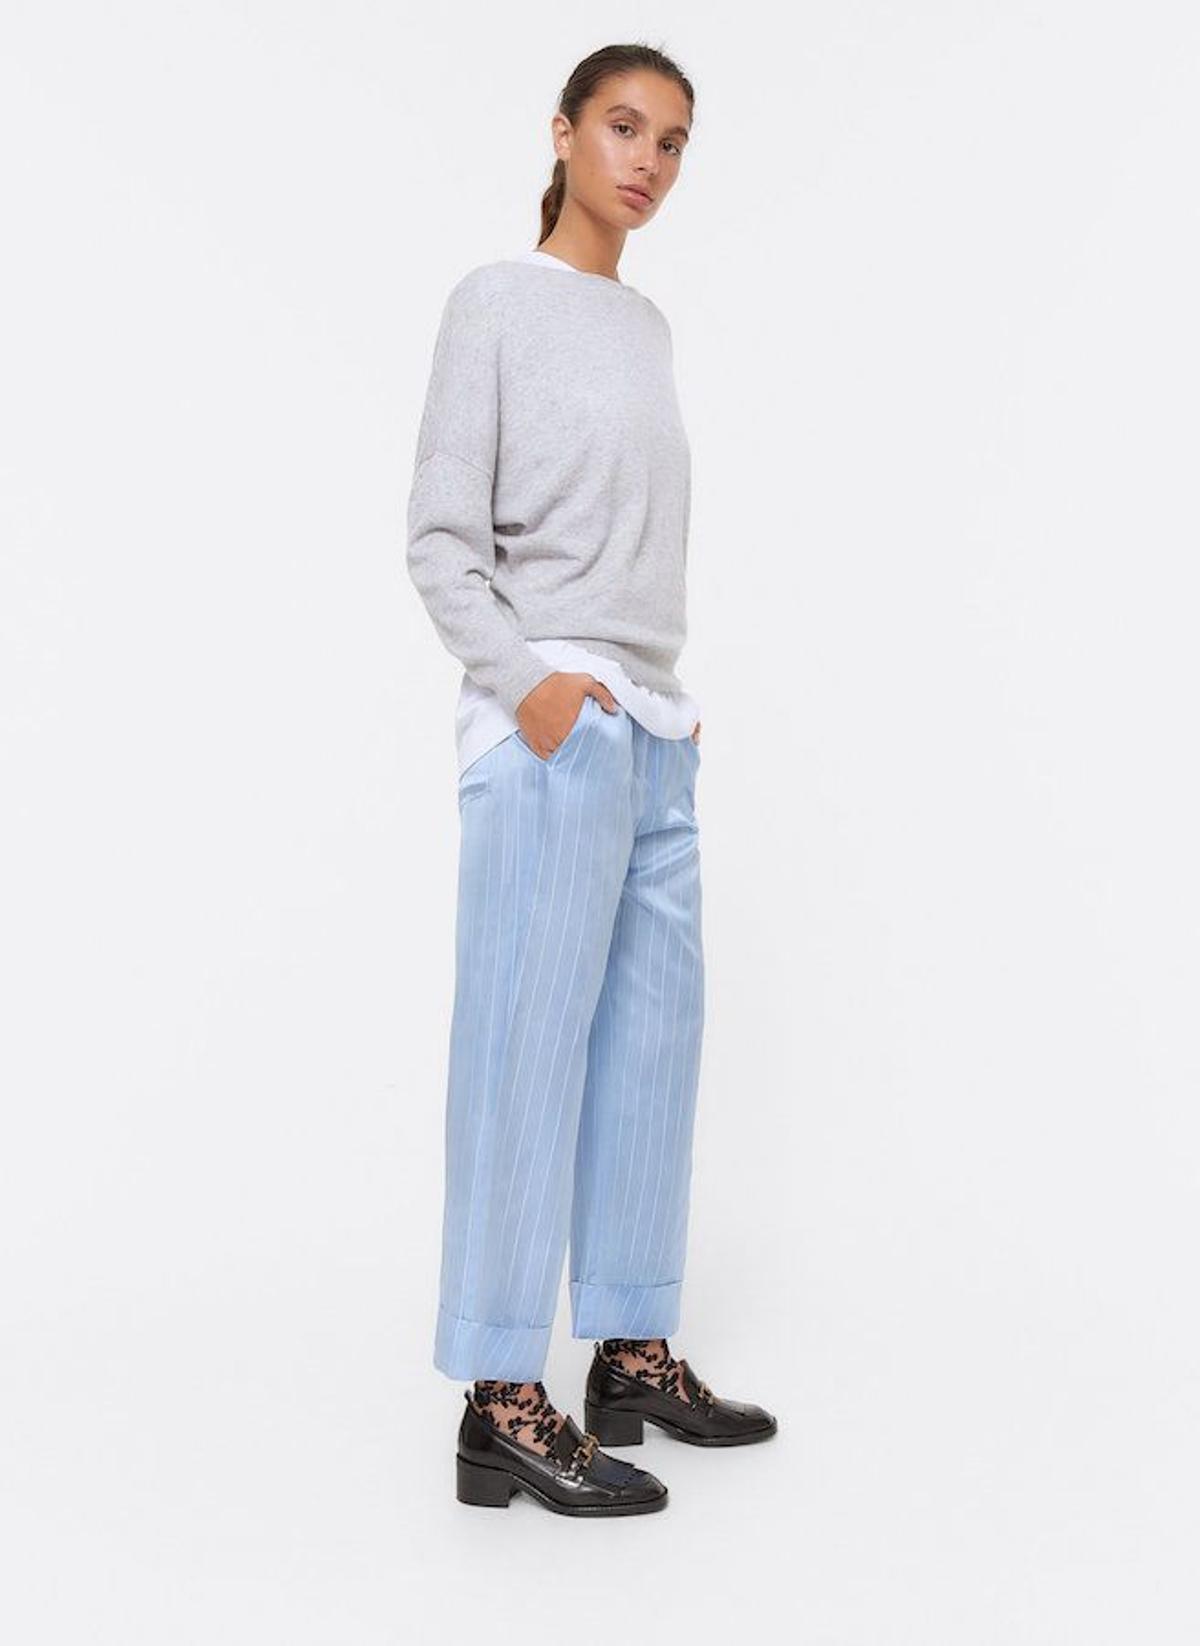 El pantalón de tipo pijama estampado de rayas